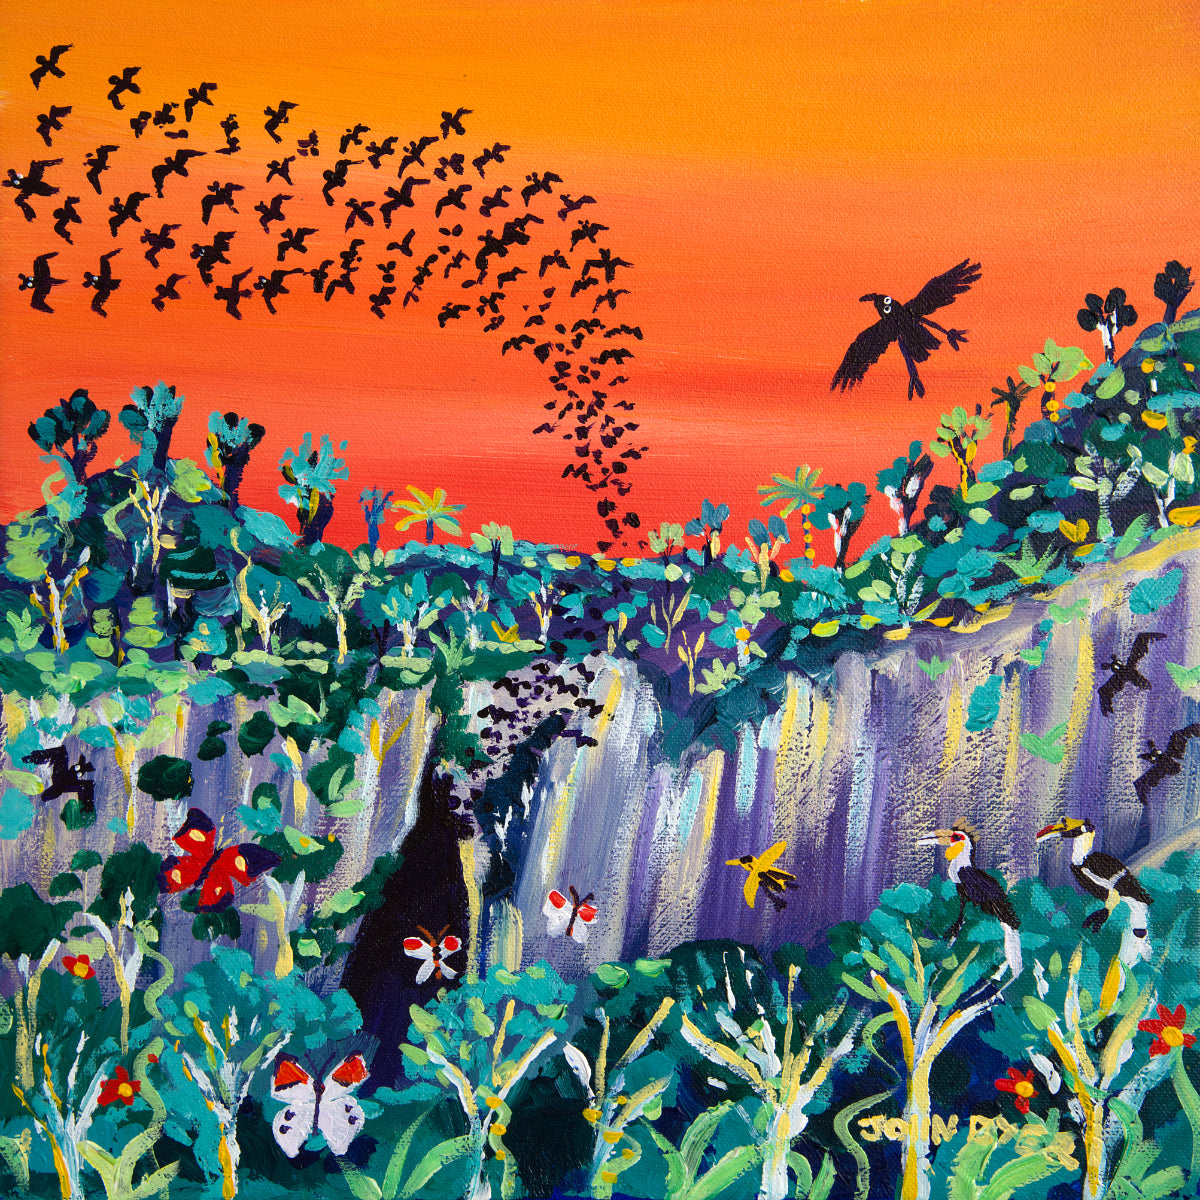 John Dyer Painting. Sunset Bats, Mulu, Borneo